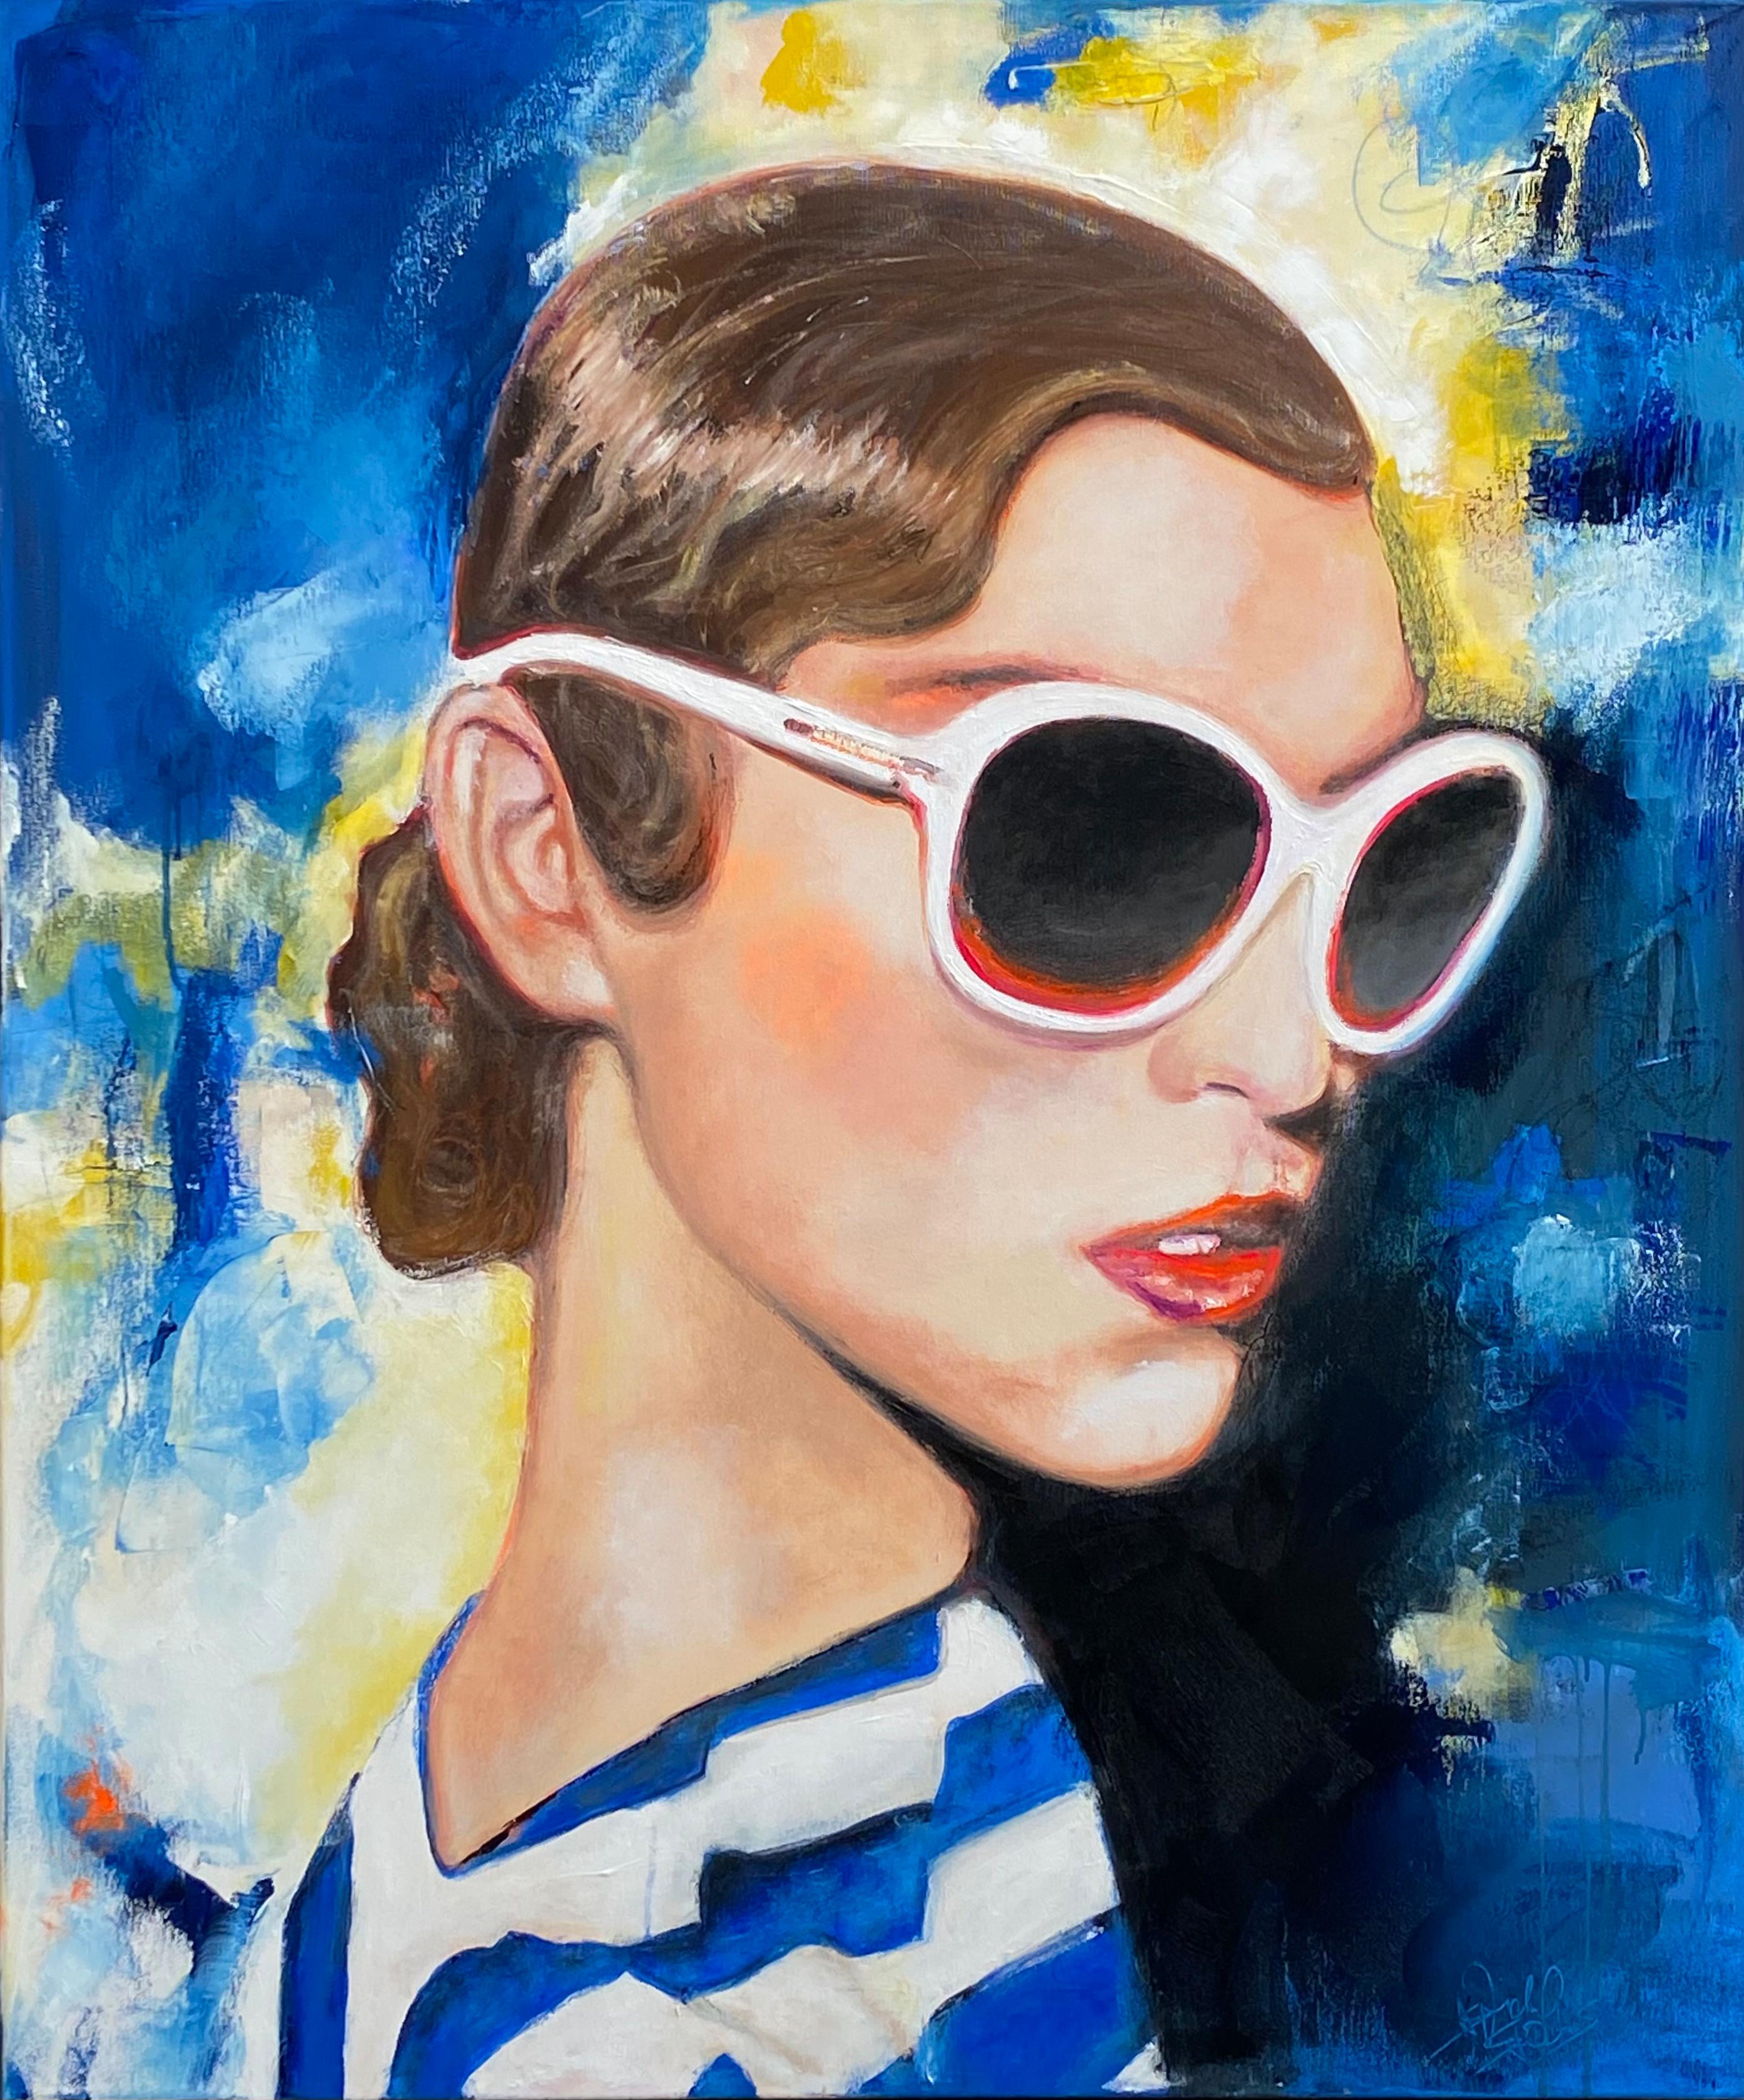 Astrid Stöfhas Portrait Painting - Pariser Blau - Paris, Blue, Portrait, Woman, Sunglasses, Summer, Fashion, 21stC